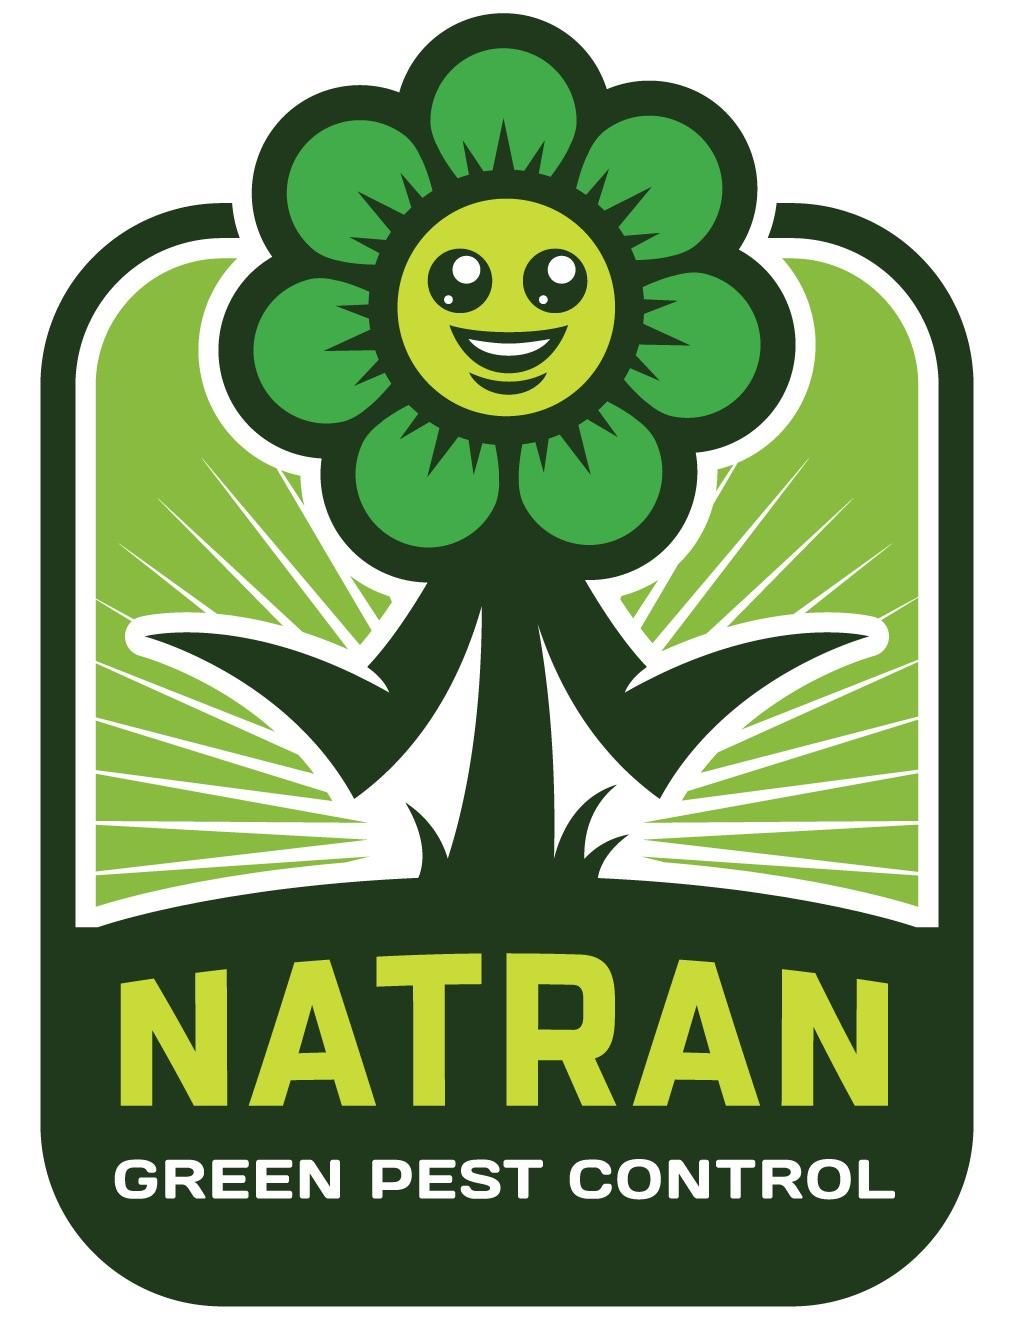 Natran, Green Pest Control